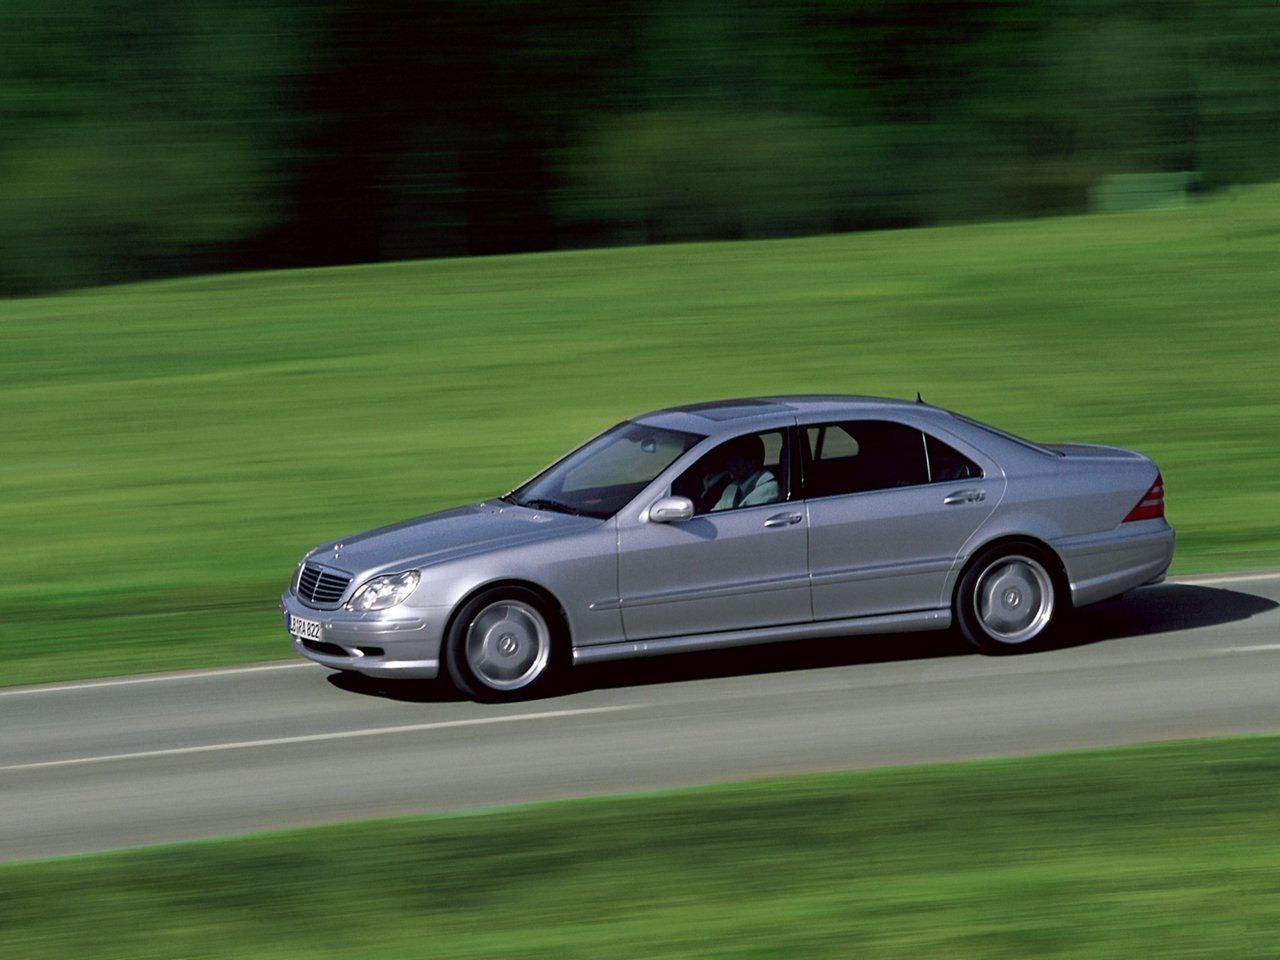 Расход газа двух комплектаций седана Long Mercedes-Benz S-klasse AMG. Разница стоимости заправки газом и бензином. Автономный пробег до и после установки ГБО.